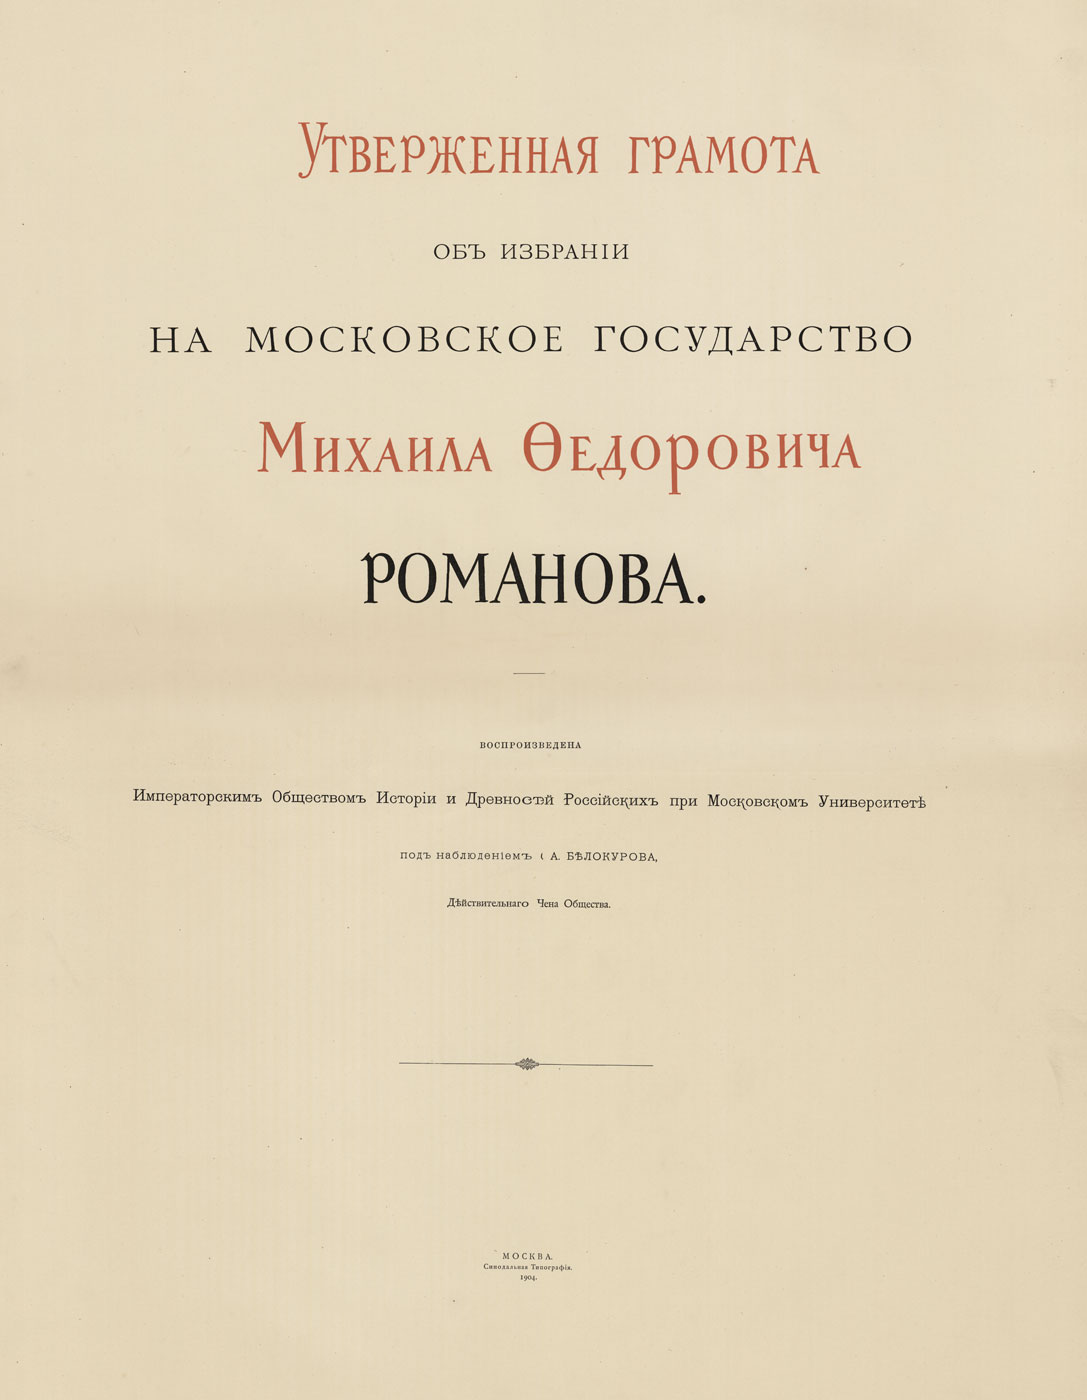 Утвержденная грамота об избрании Михаила Федоровича. М., 1904. РГАДА.